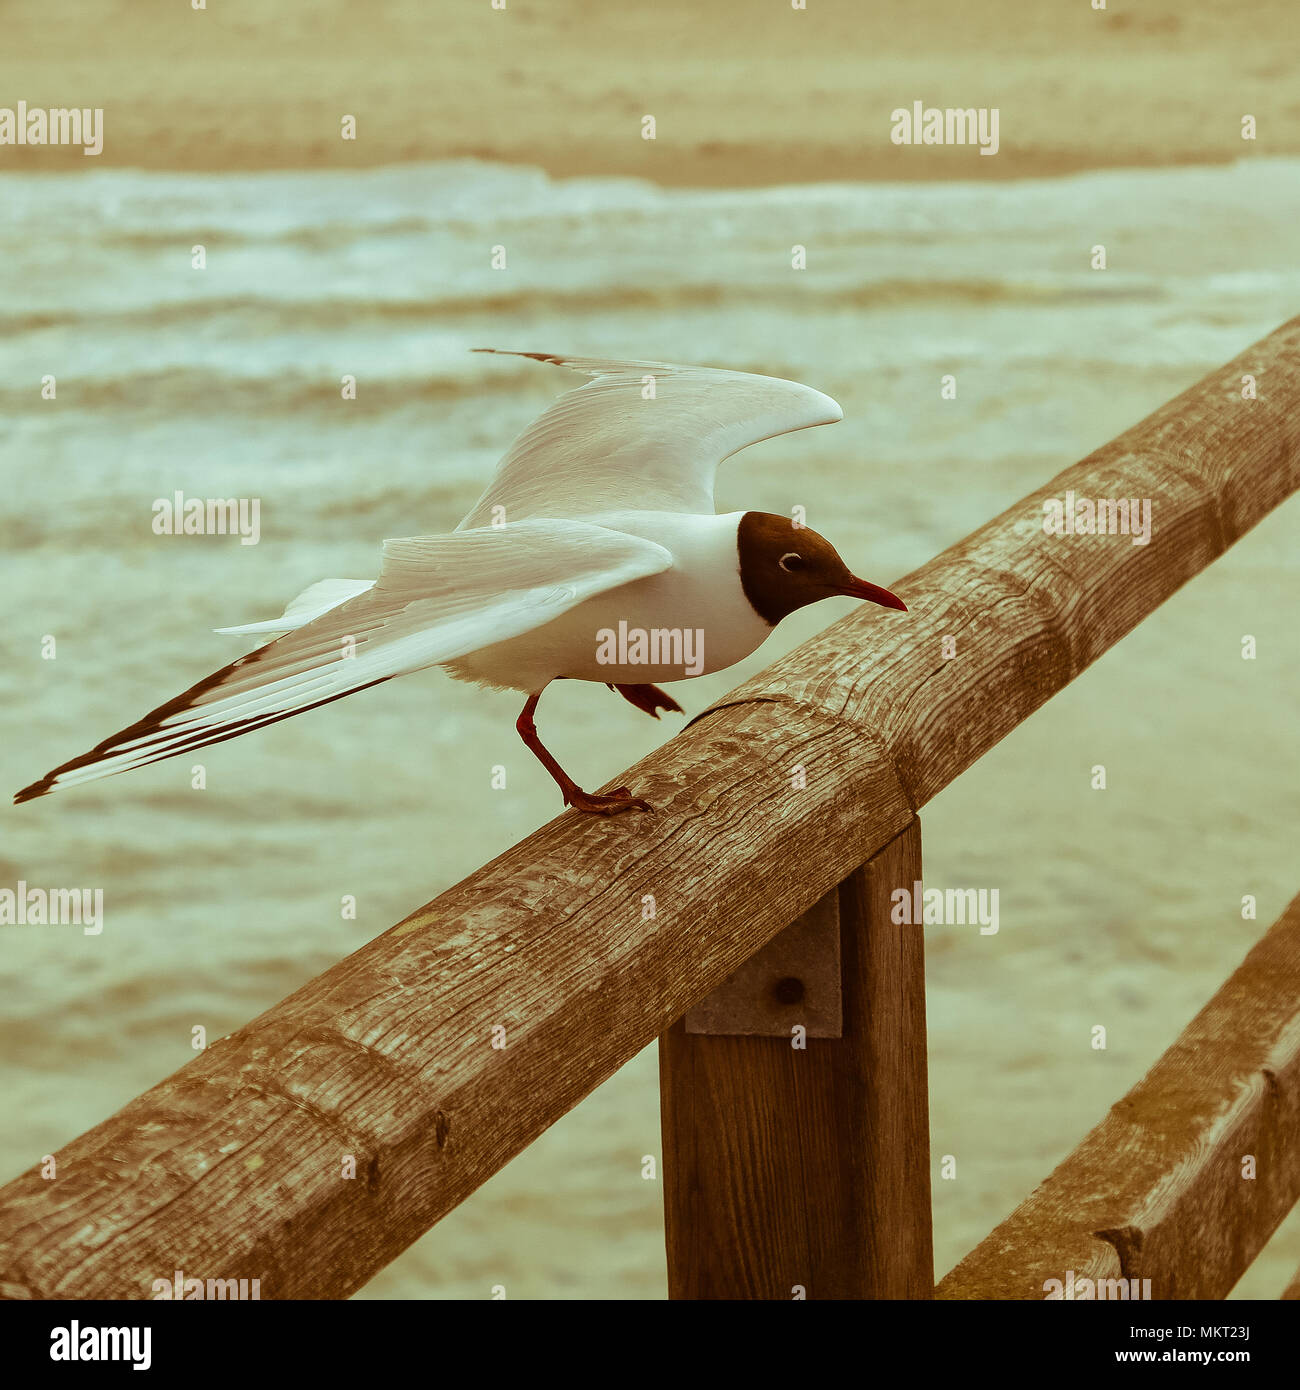 Wild seagull sbarco sulla ringhiera in legno Foto Stock